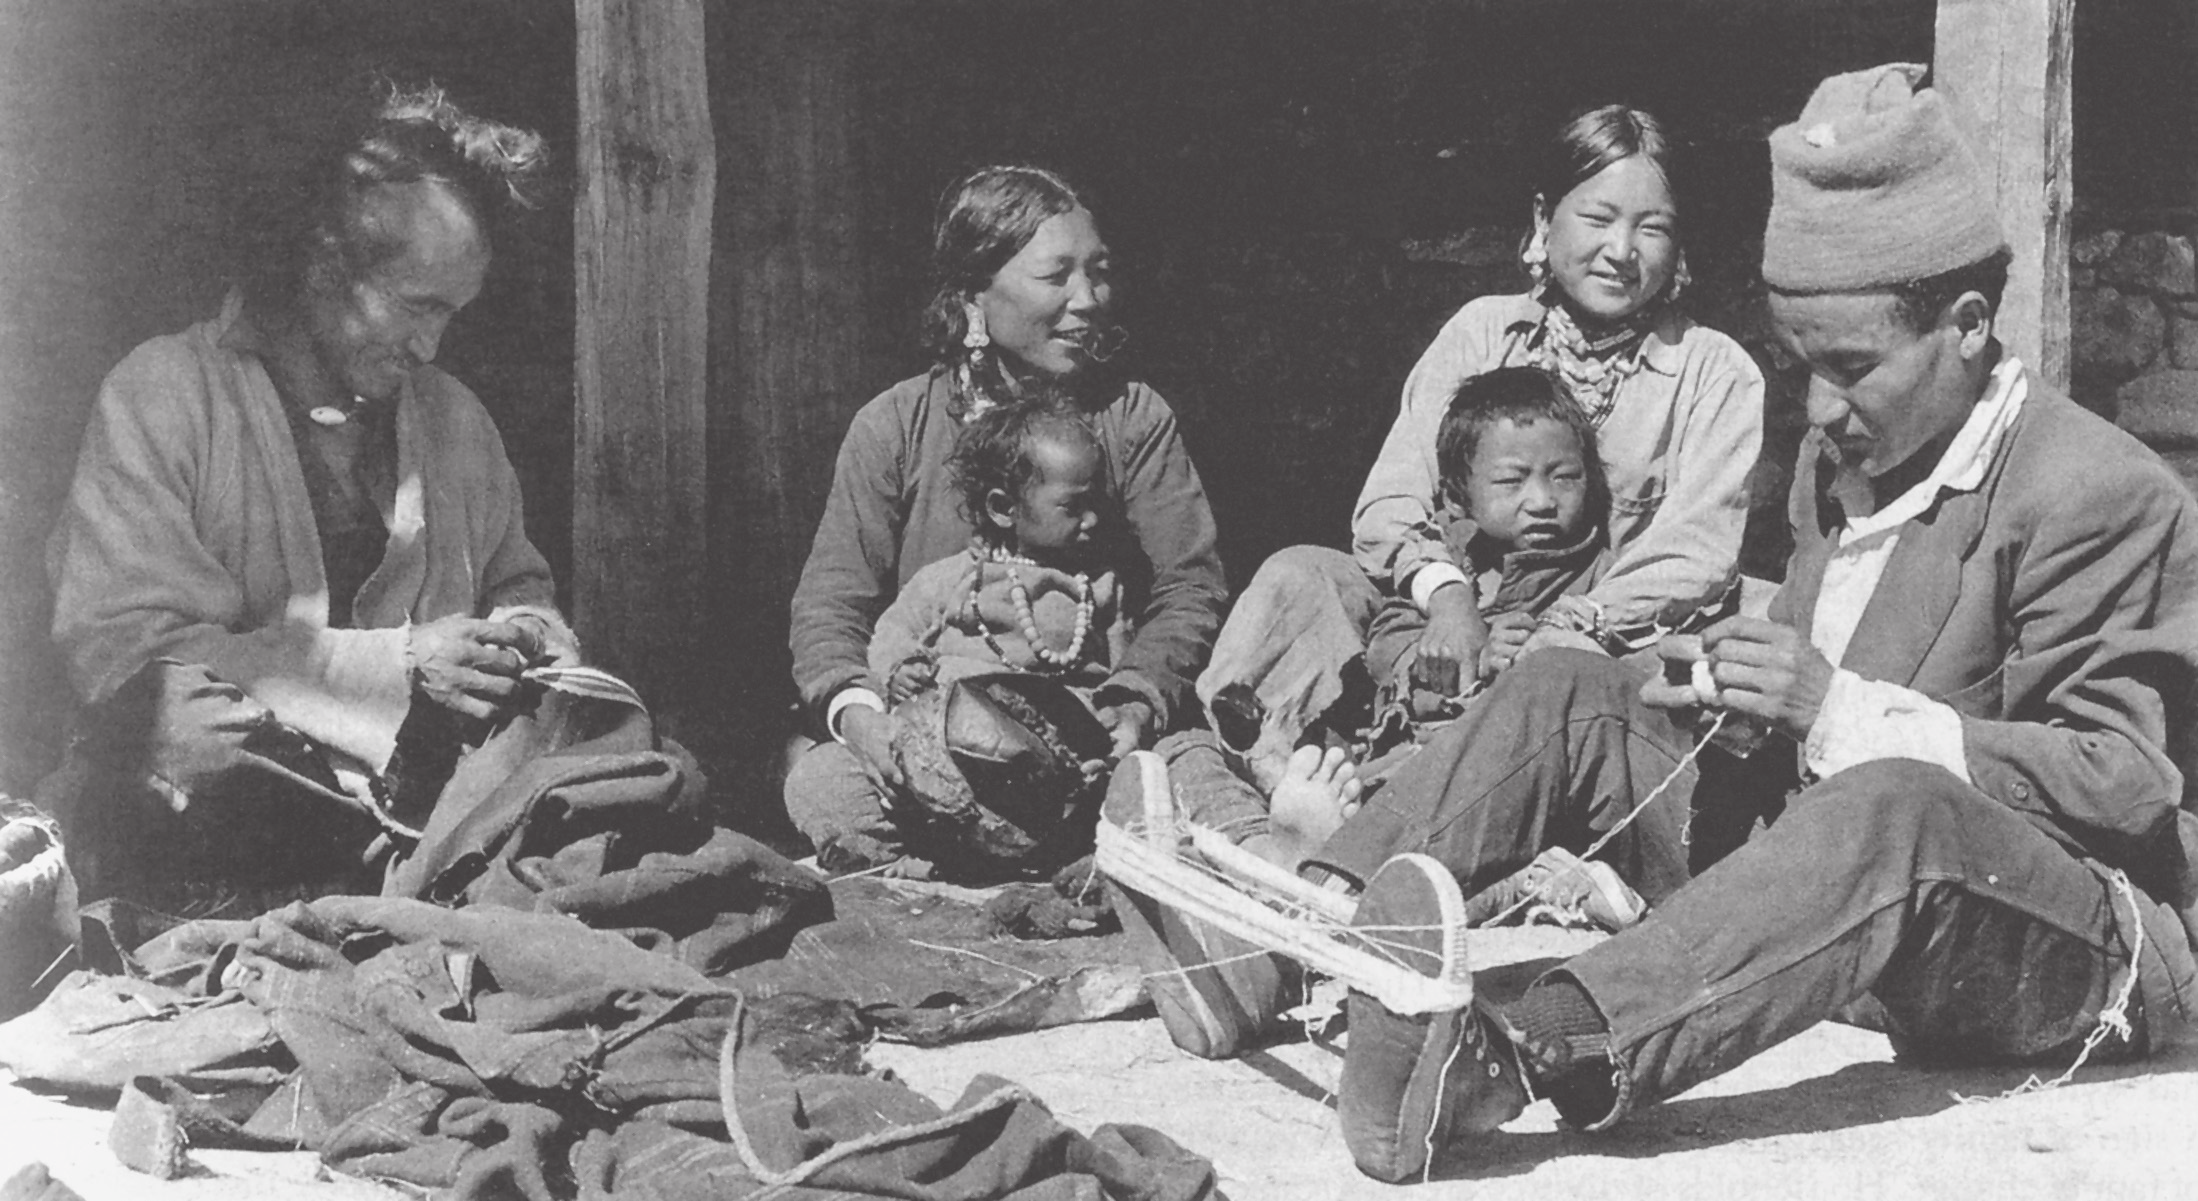 Antropologie manželství a sexuality 3 Polyandrická tibetská rodina z Nepálu: zleva doprava jsou nejstarší manžel, společná manželka s nejmladším dítětem (děvčátkem), nejstarší dcera se svým bratrem